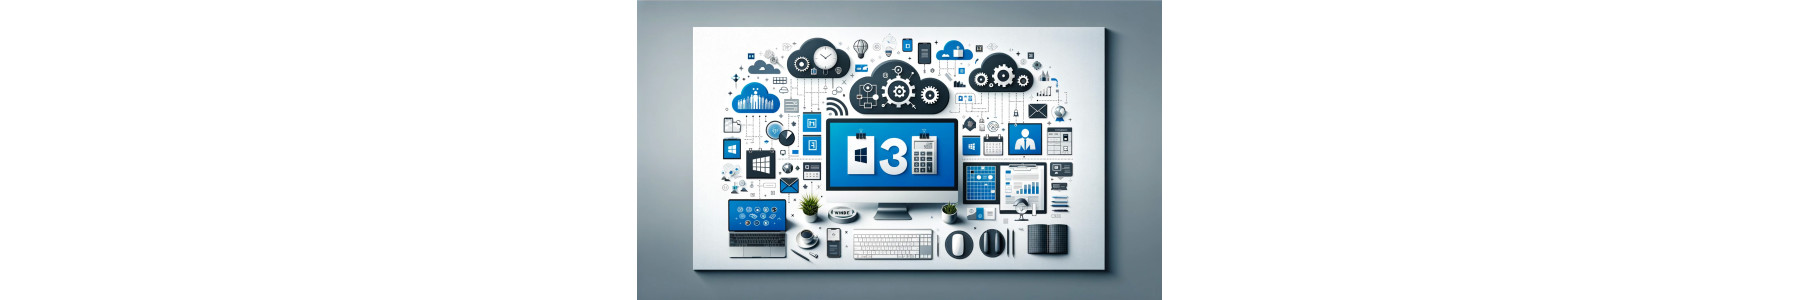 Microsoft365: Produttività e Collaborazione nel Cloud | Webbin24.com